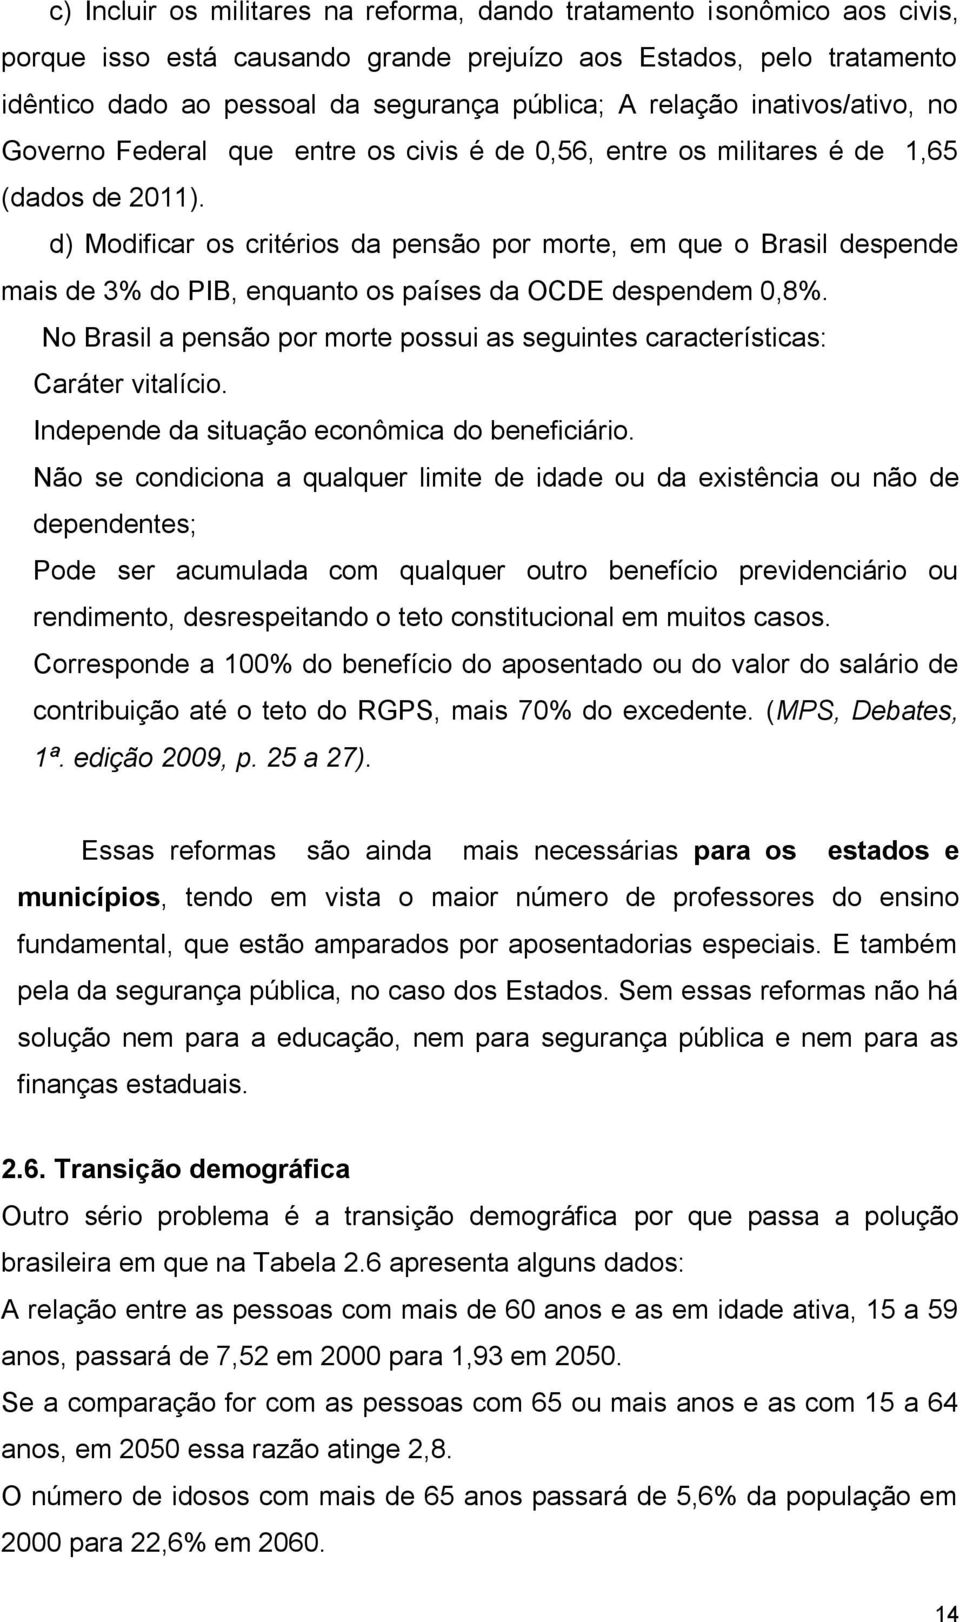 d) Modificar os critérios da pensão por morte, em que o Brasil despende mais de 3% do PIB, enquanto os países da OCDE despendem 0,8%.